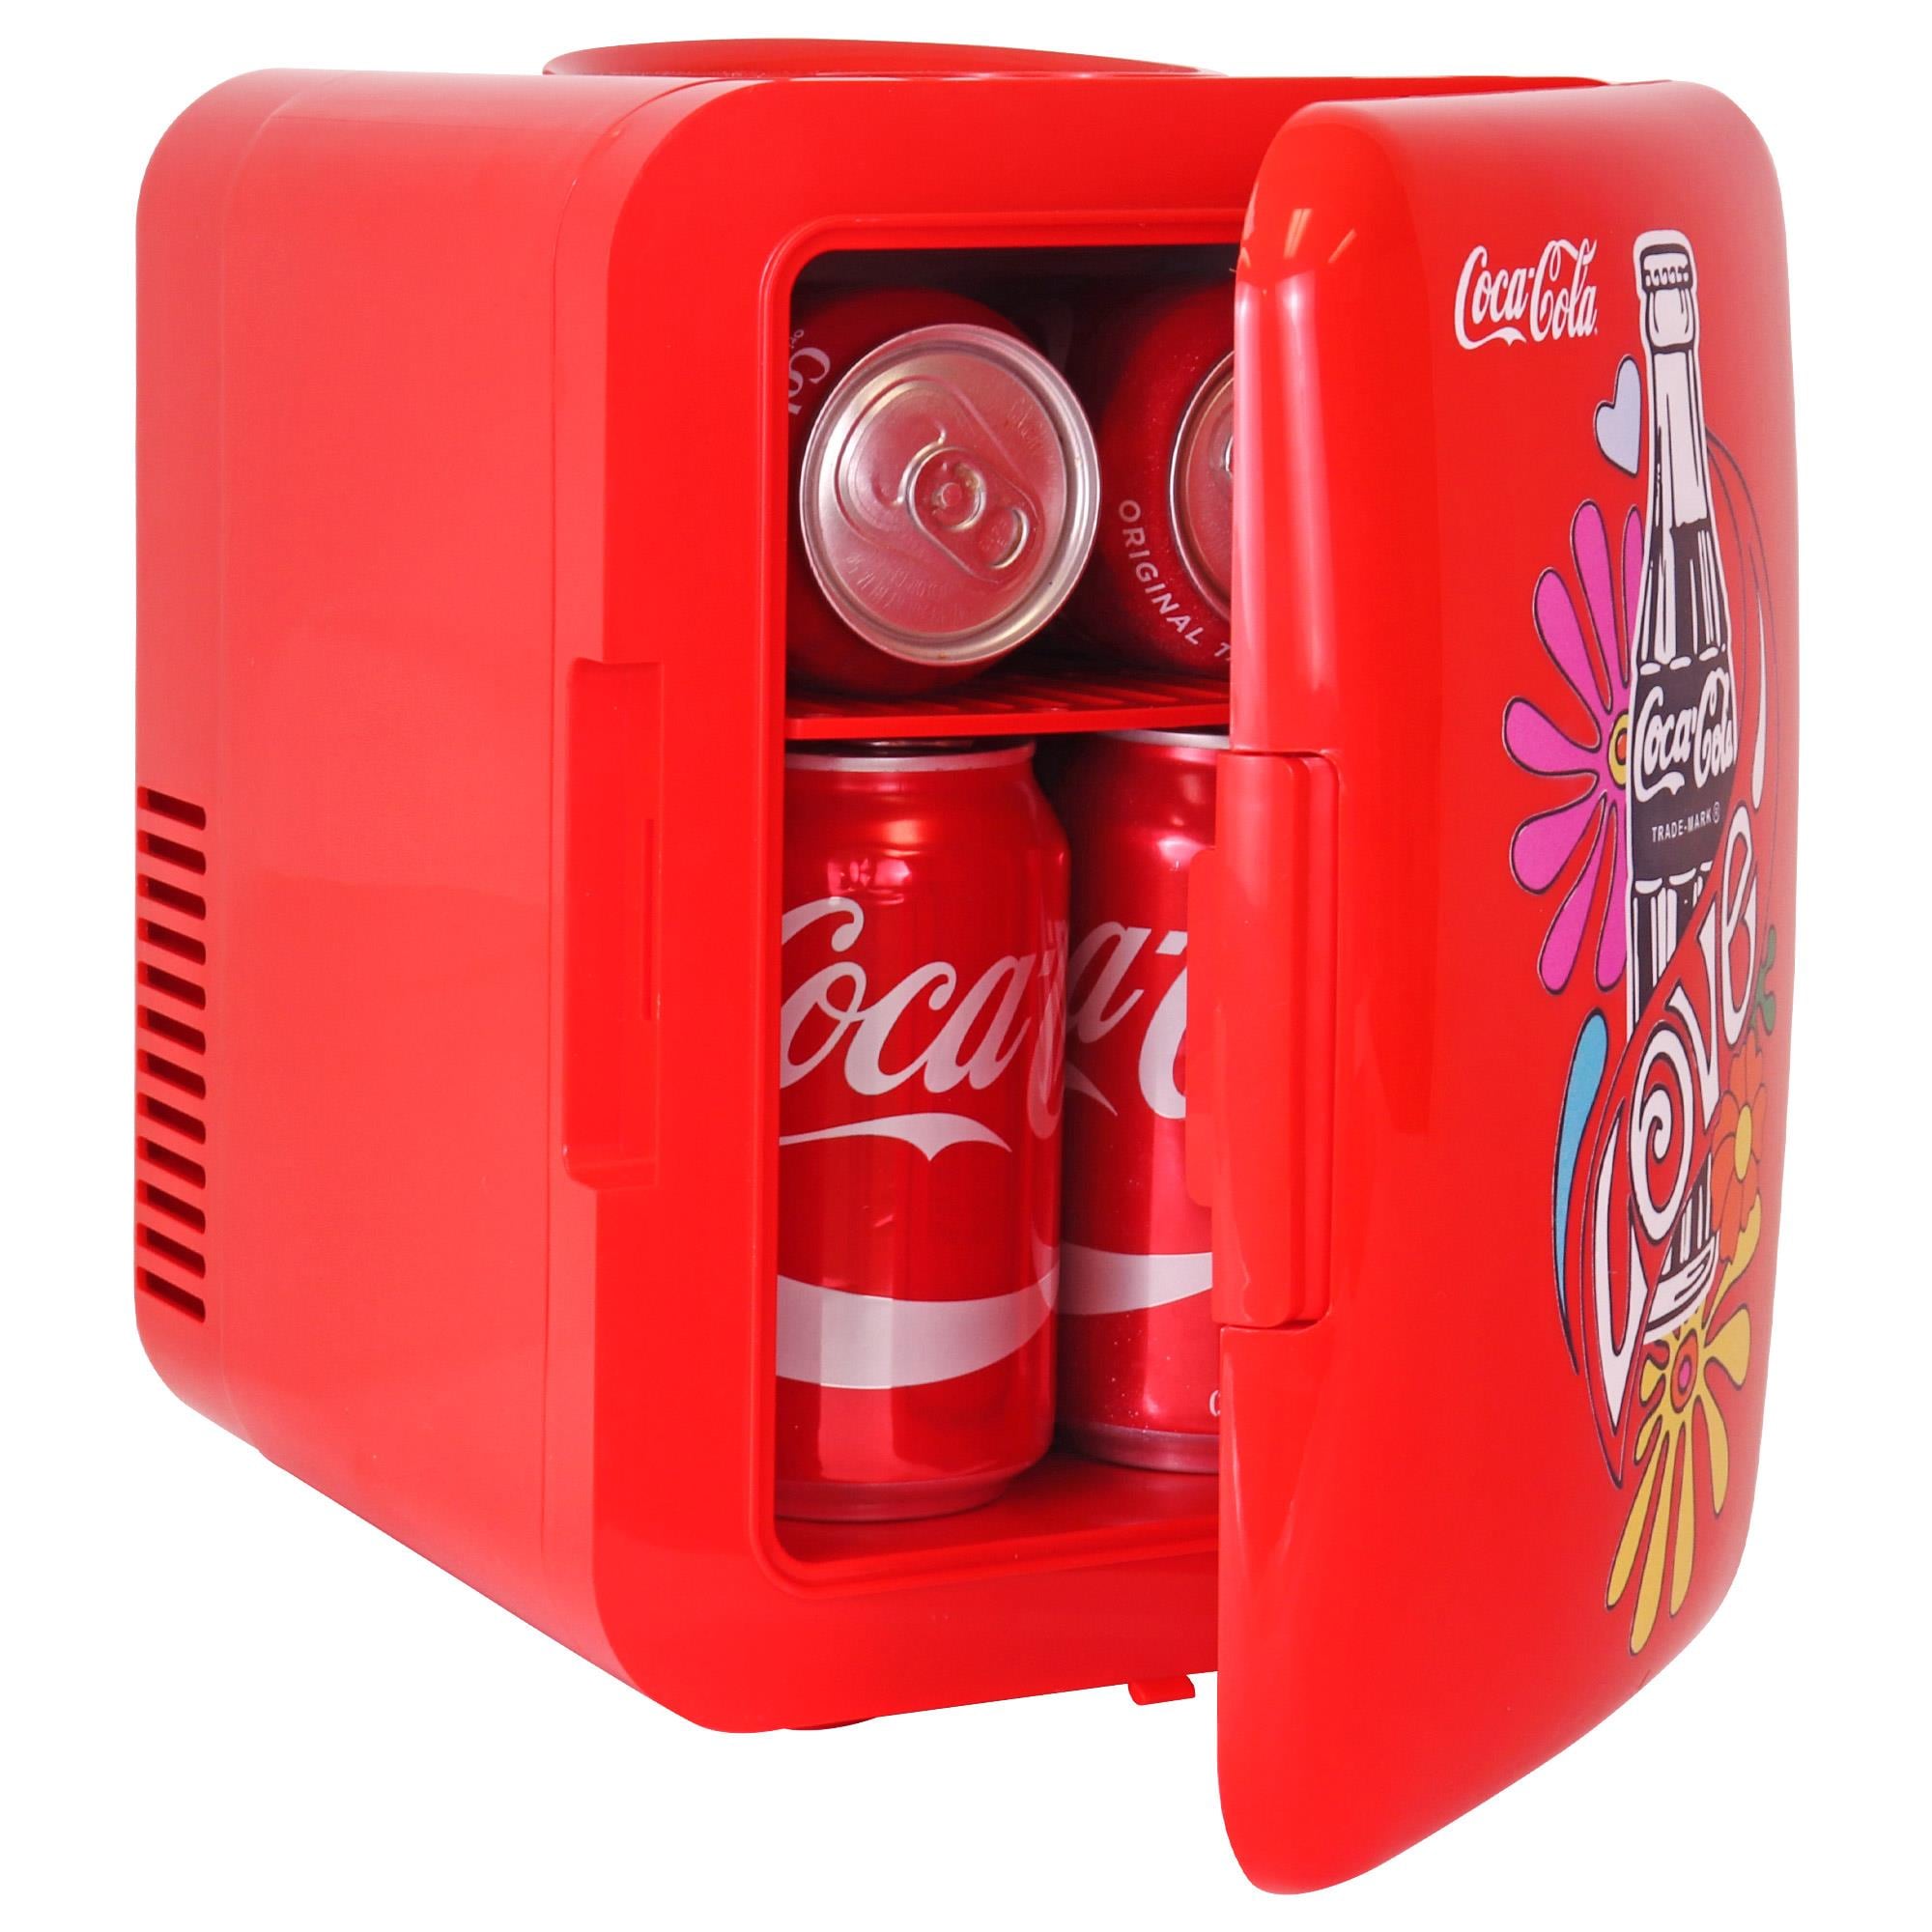 Coca-Cola 1971 Series Love 0.14-cu ft Mini Fridge (Red) in the